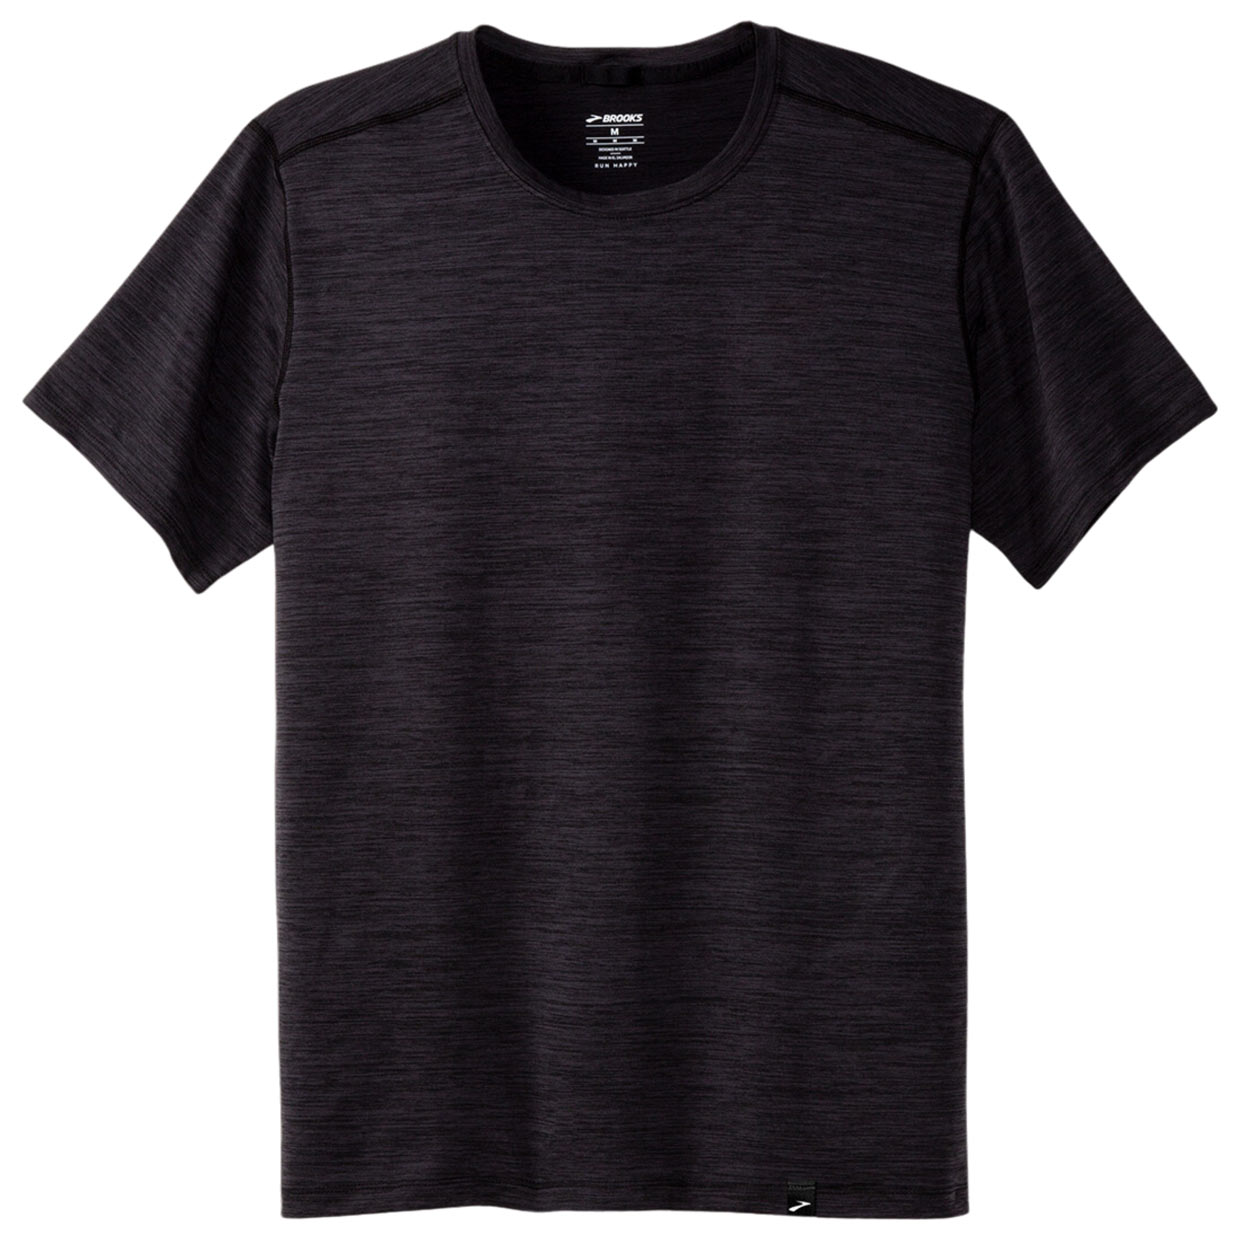 Herren T-Shirt Luxe Short Sleeve